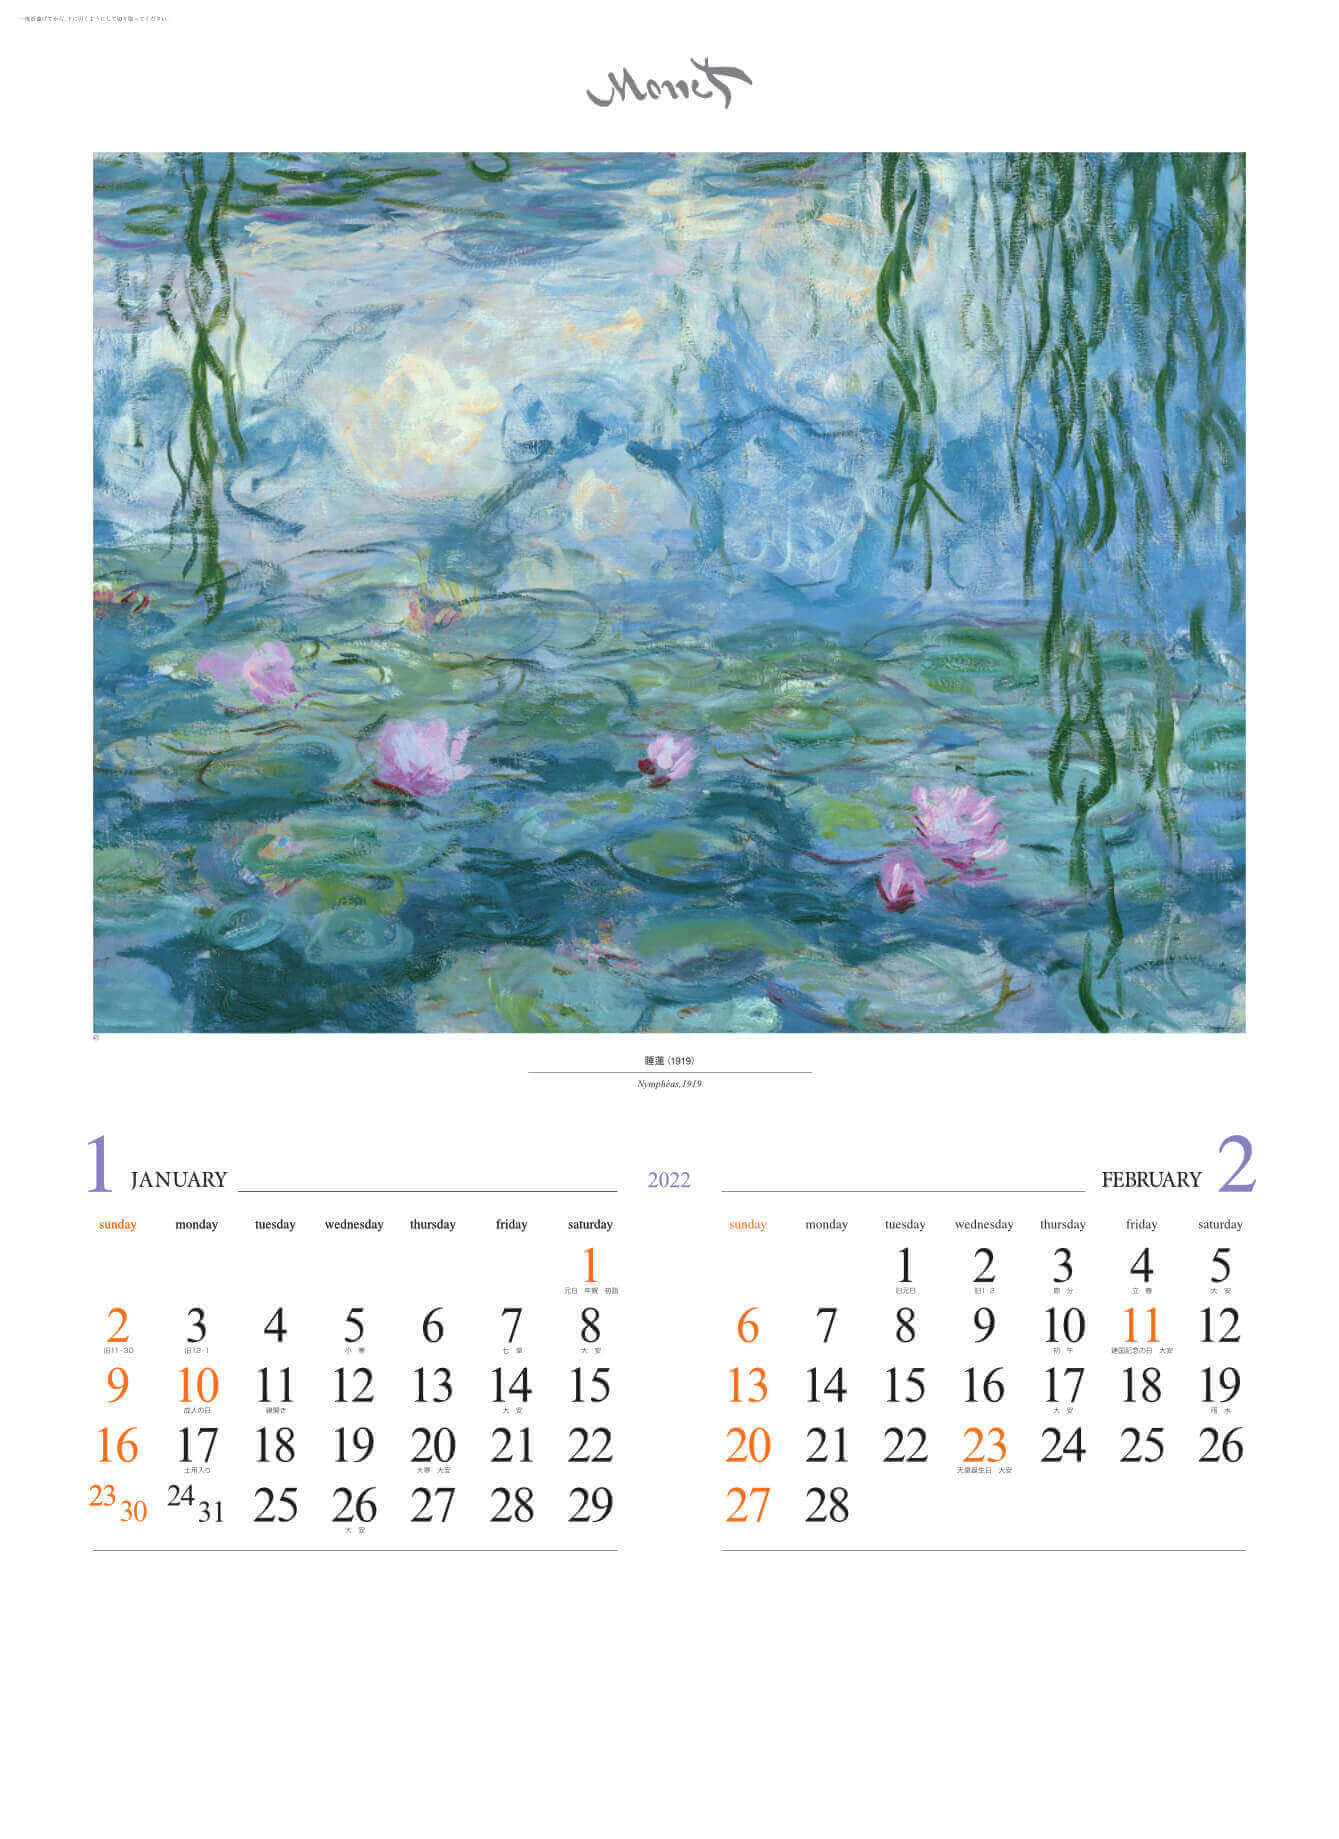 1-2月 睡蓮 モネ 2022年カレンダーの画像